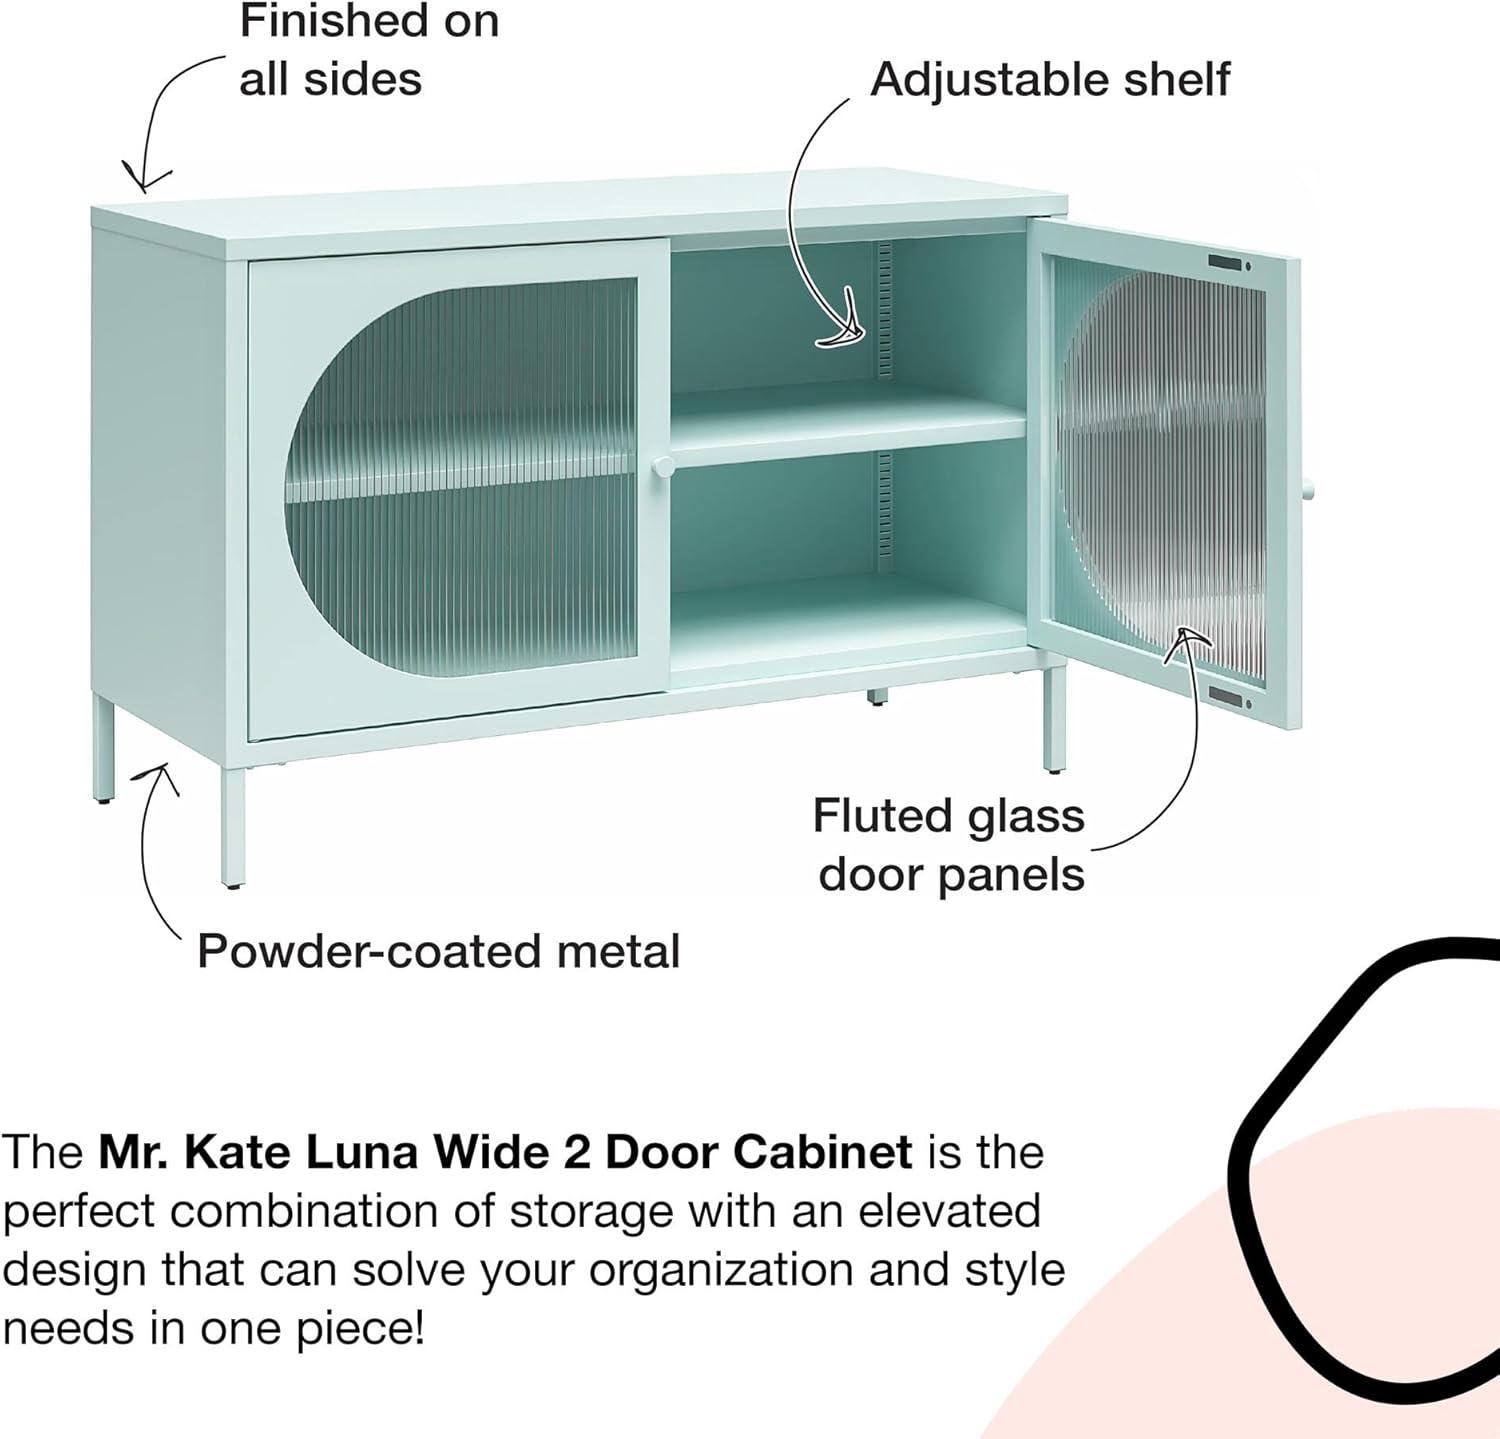 Luna Black Metal 2-Door Accent Cabinet with Adjustable Shelving